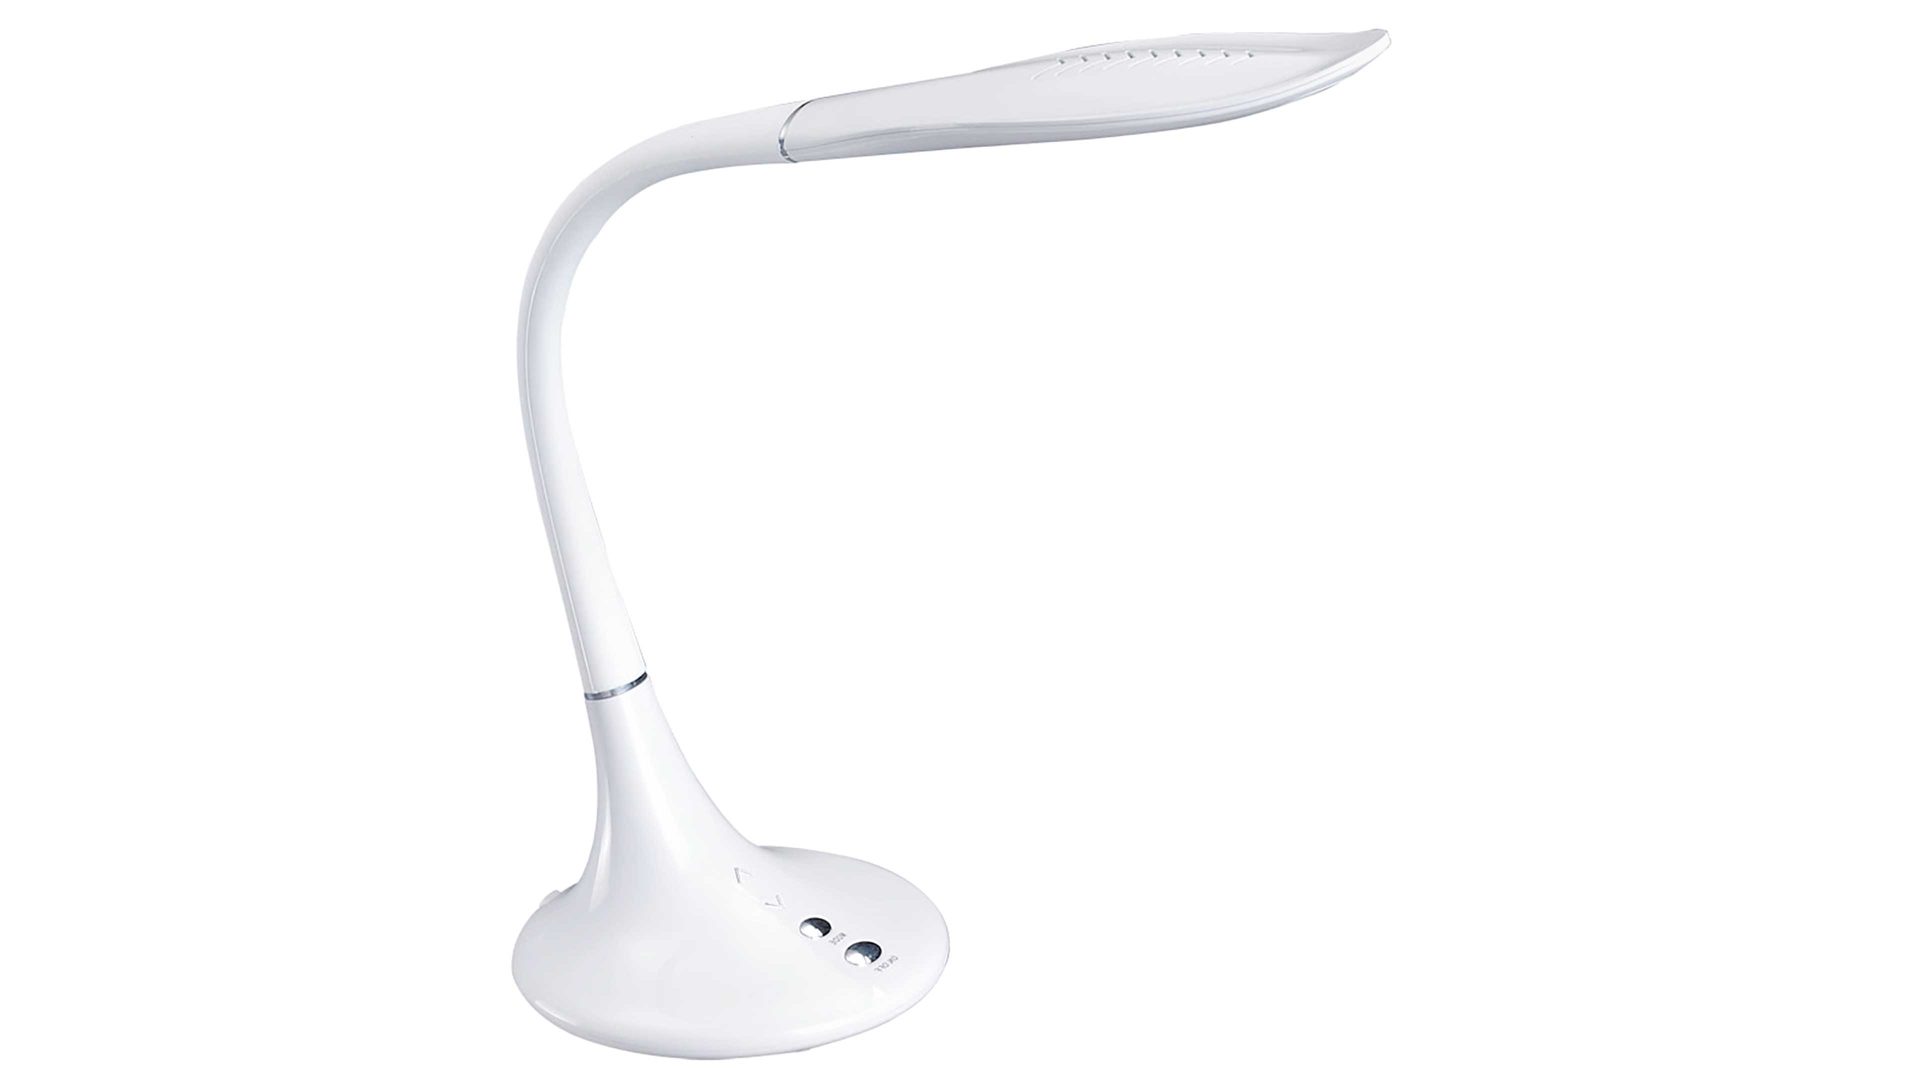 Schreibtischleuchte Globo lighting aus Kunststoff in Weiß GLOBO LED-Schreibtischleuchte Pattaya - LED-Schreibtischlampe weißer Kunststoff – Höhe ca. 70 cm